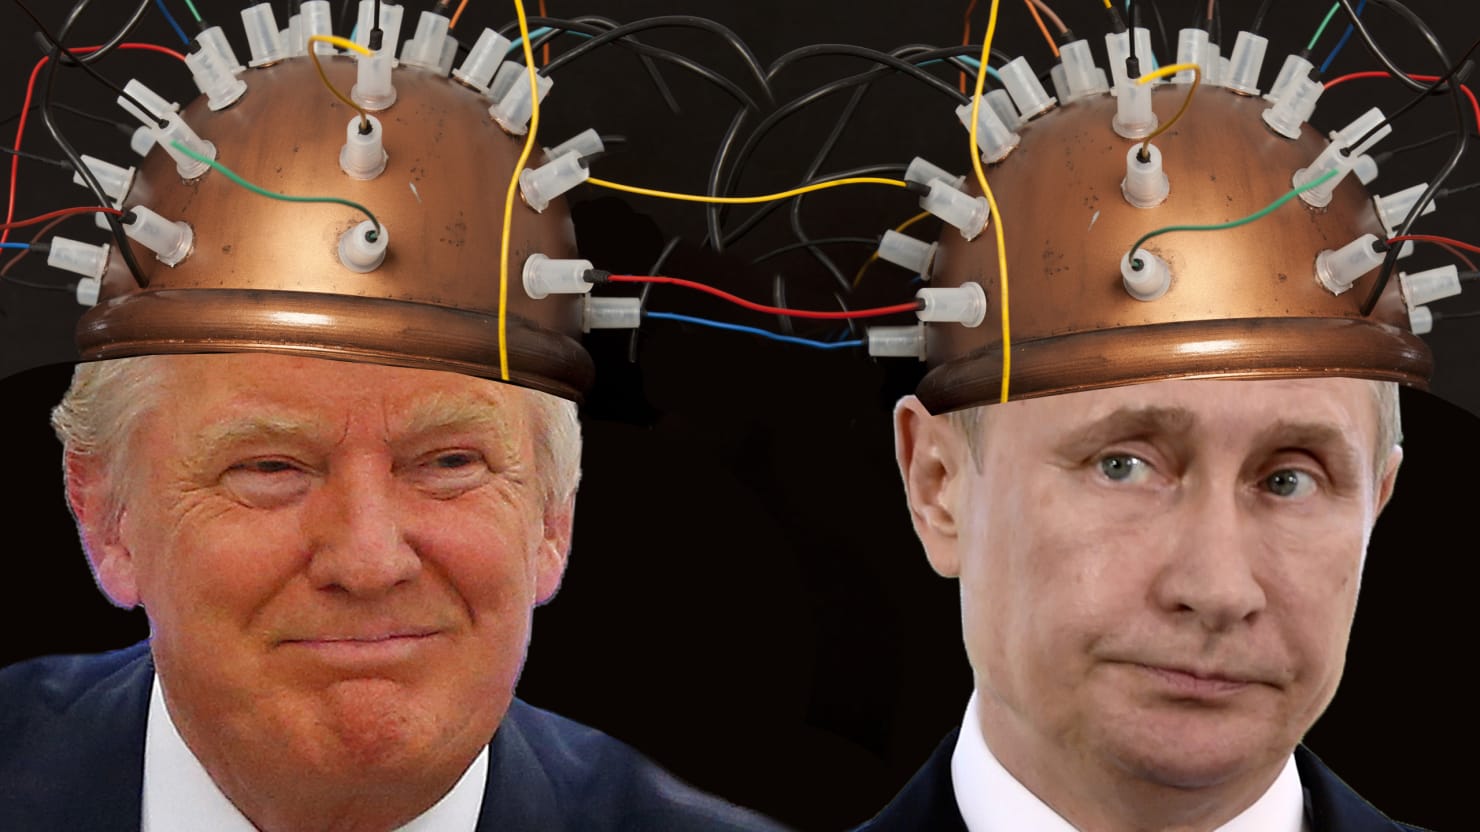 160815-Weiss-Putin-Trump-mindmeld_nxhbhd